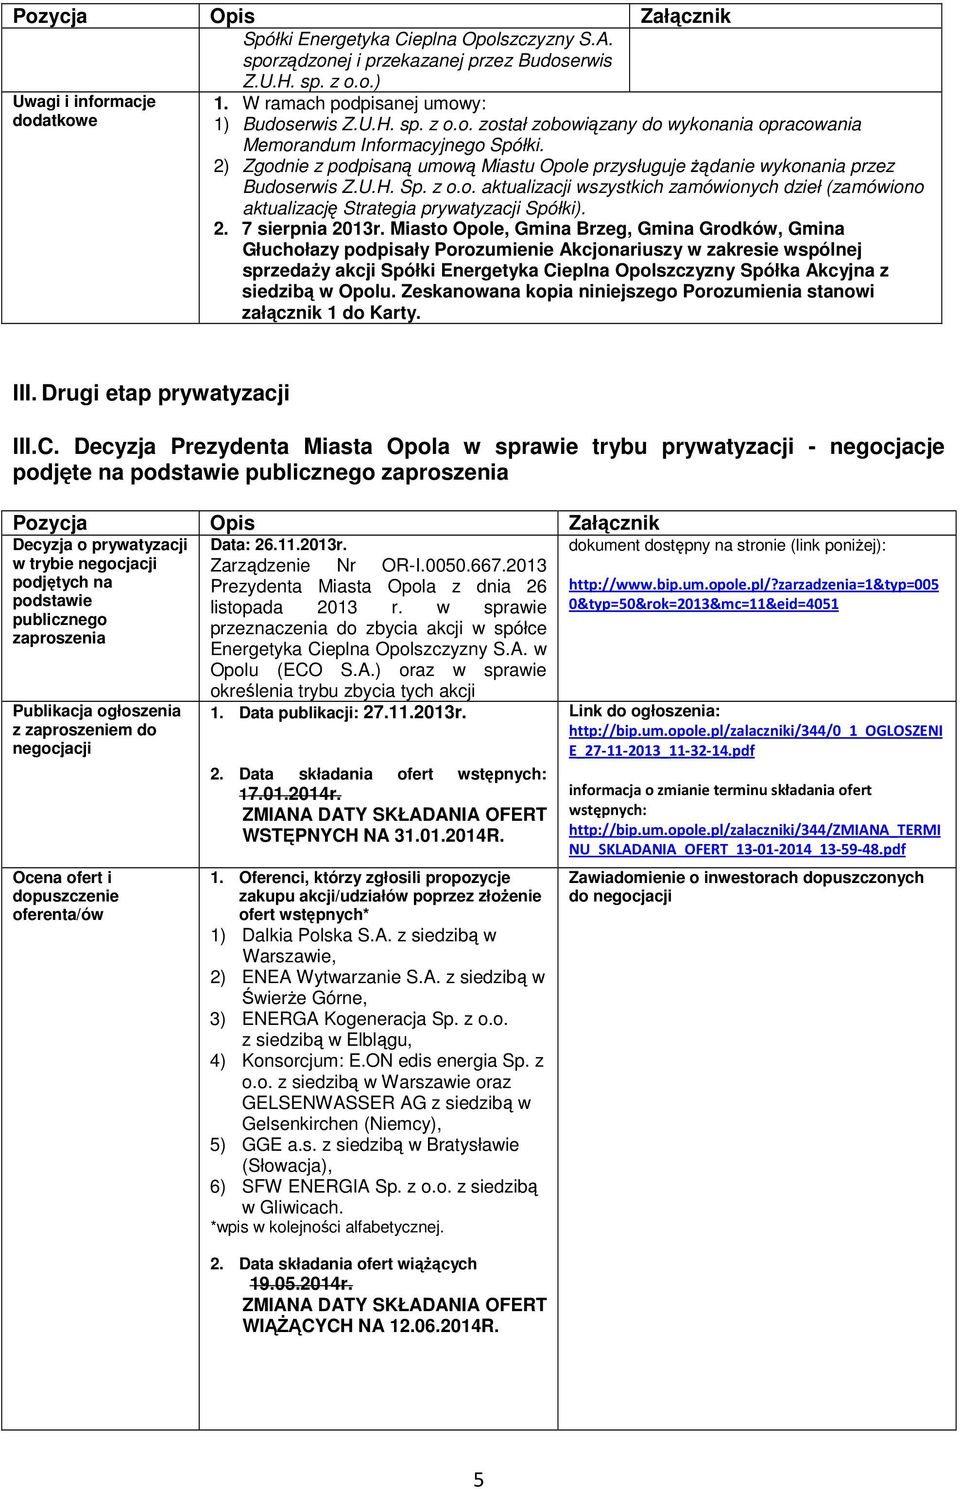 2) Zgodnie z podpisaną umową Miastu Opole przysługuje Ŝądanie wykonania przez Budoserwis Z.U.H. Sp. z o.o. aktualizacji wszystkich zamówionych dzieł (zamówiono aktualizację Strategia prywatyzacji Spółki).